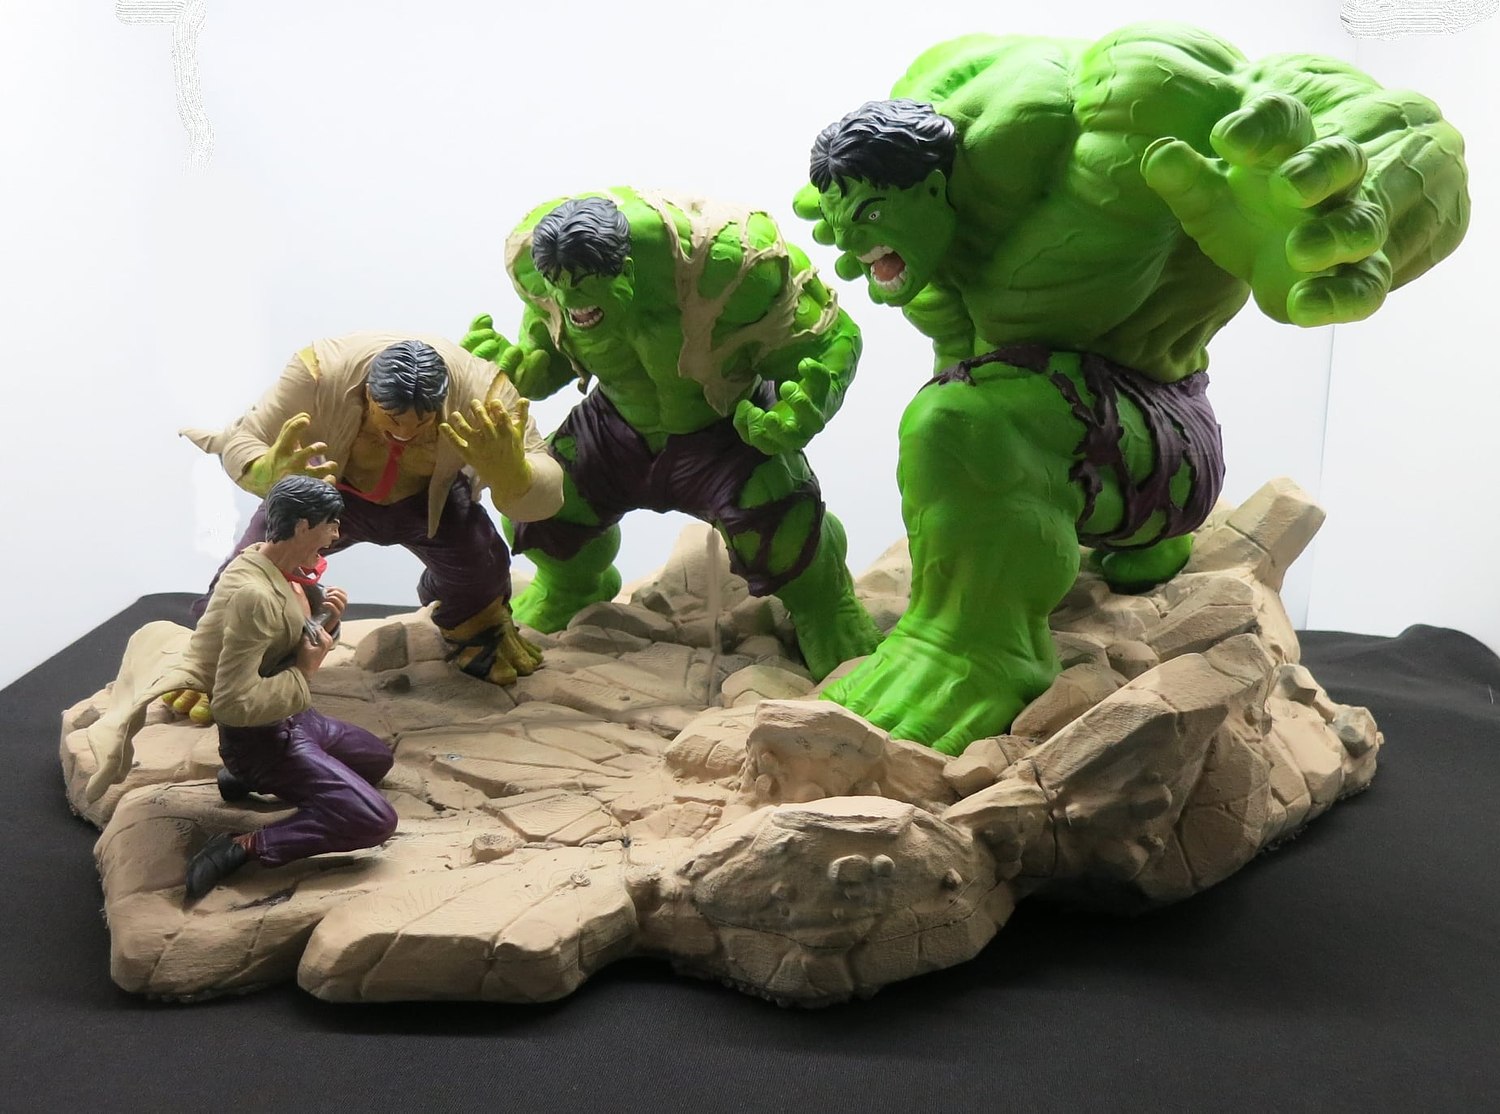 Hulk Transformation from Marvel